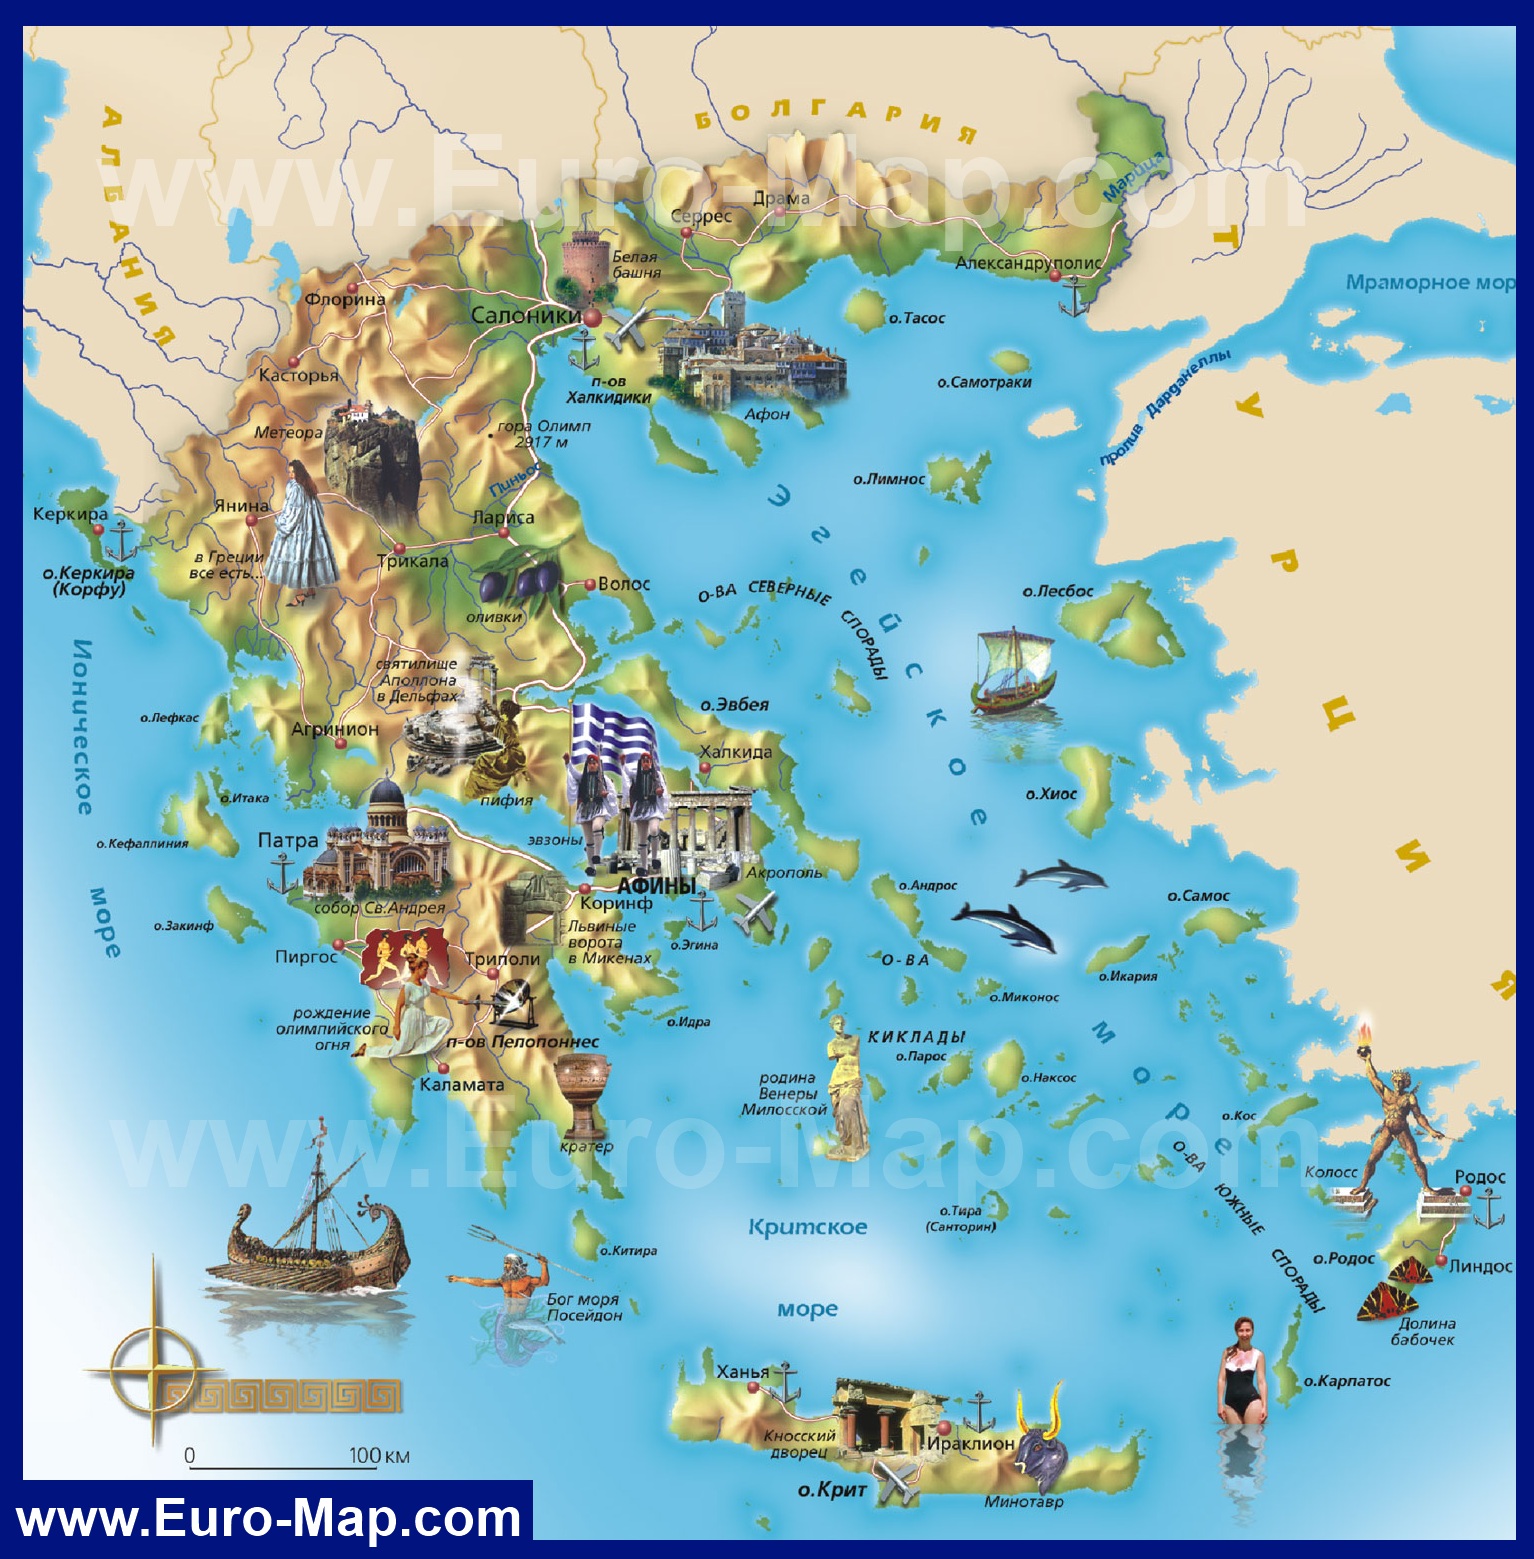 Играть на карте греции играть в онлайн игры бесплатно белка карты